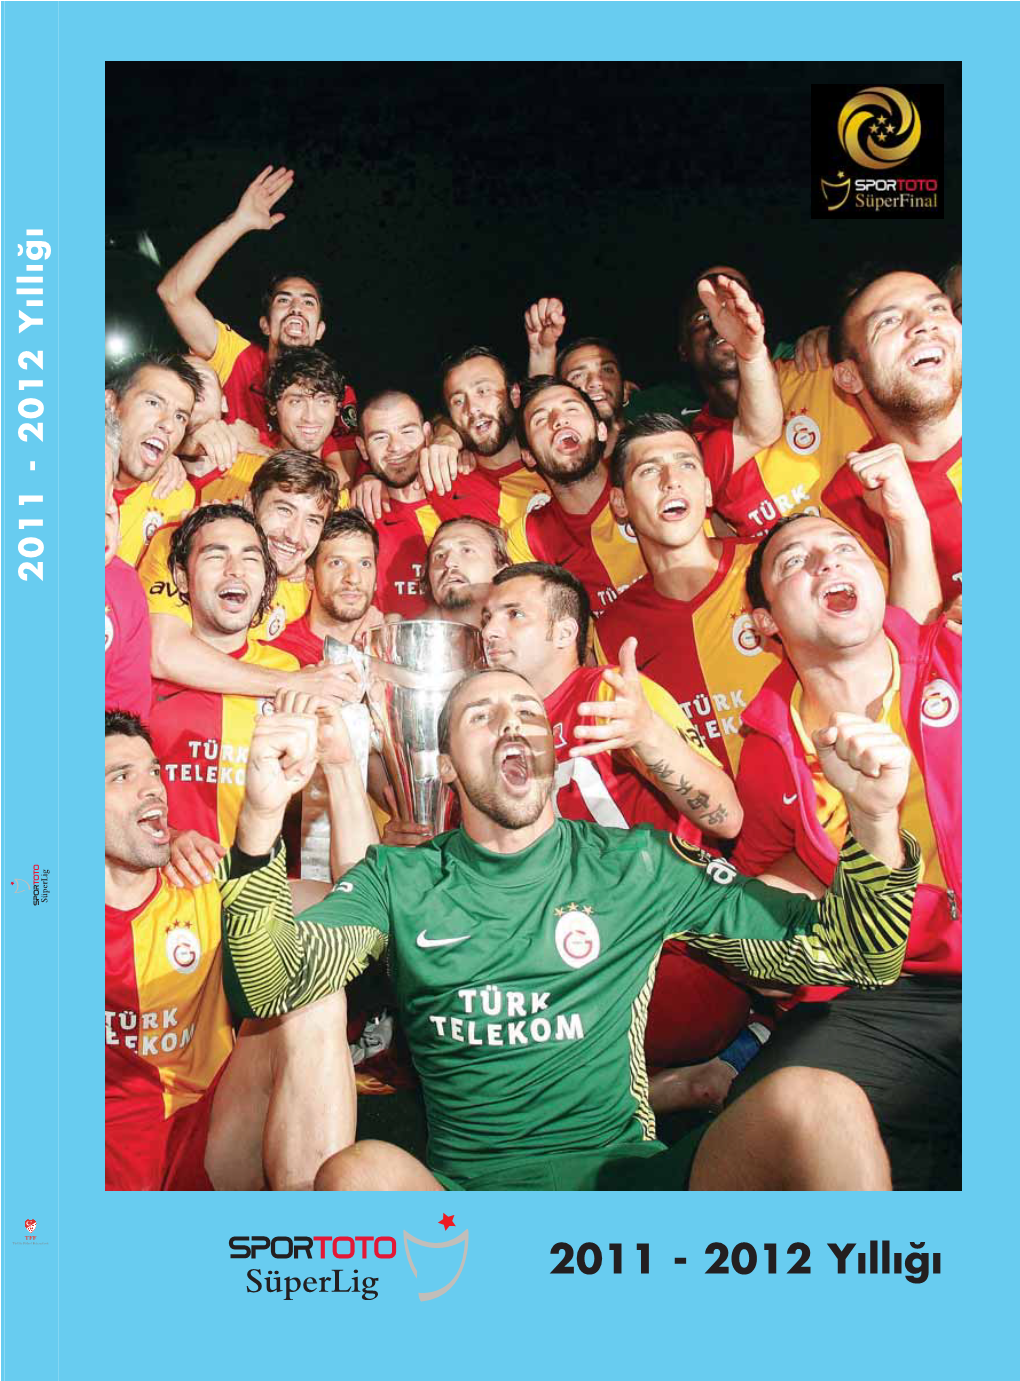 2011-2012 Spor Toto Süper Lig Yıllığı'nın PDF'i Için Tıklayınız